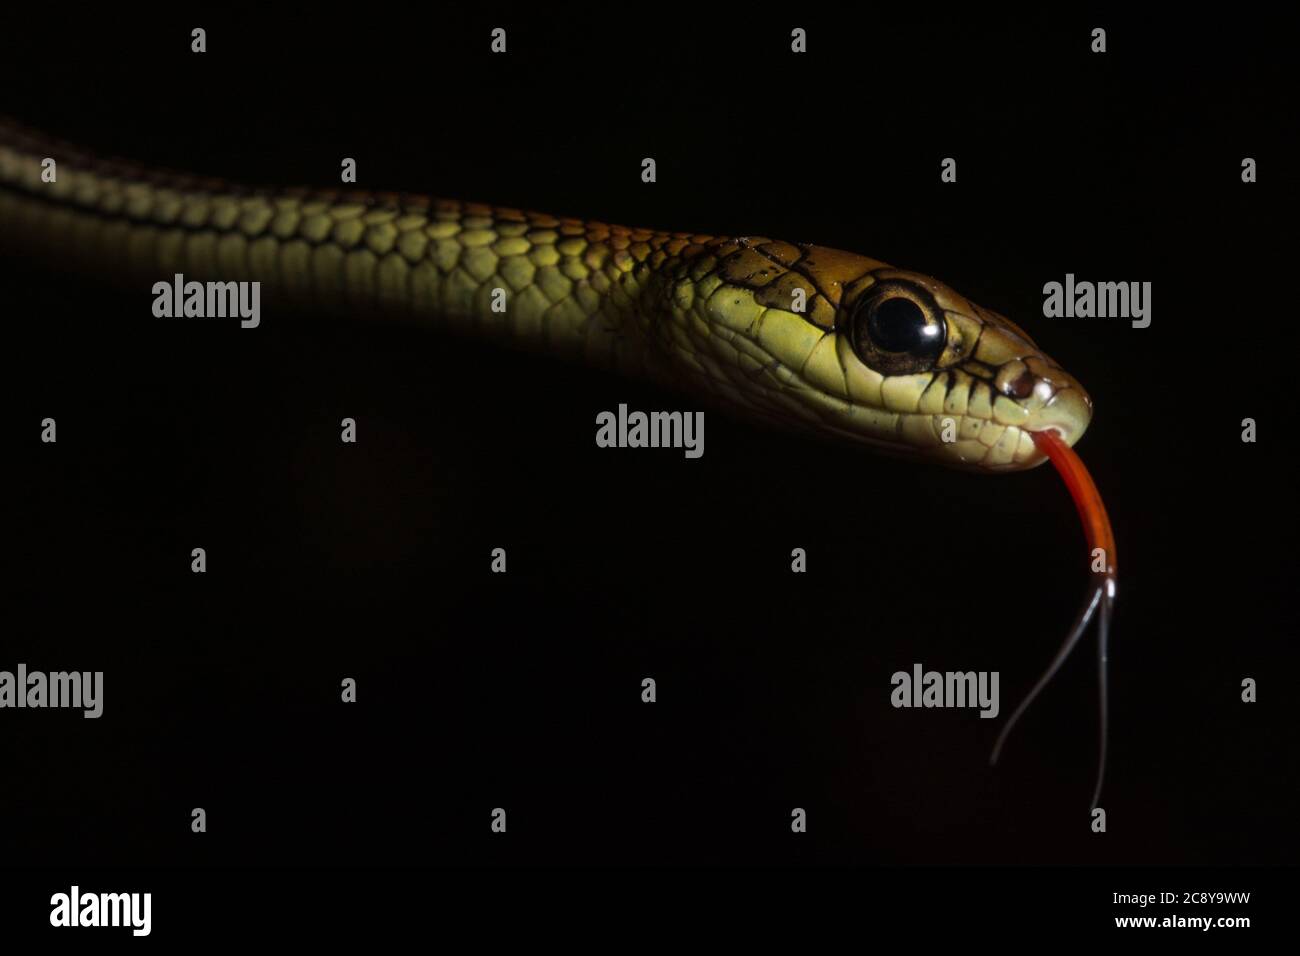 Un portrait d'un serpent d'arbre à zébré (Dendrelaphis caudolineatus) qui s'effloie dans sa langue. Prise à Bornéo. Banque D'Images